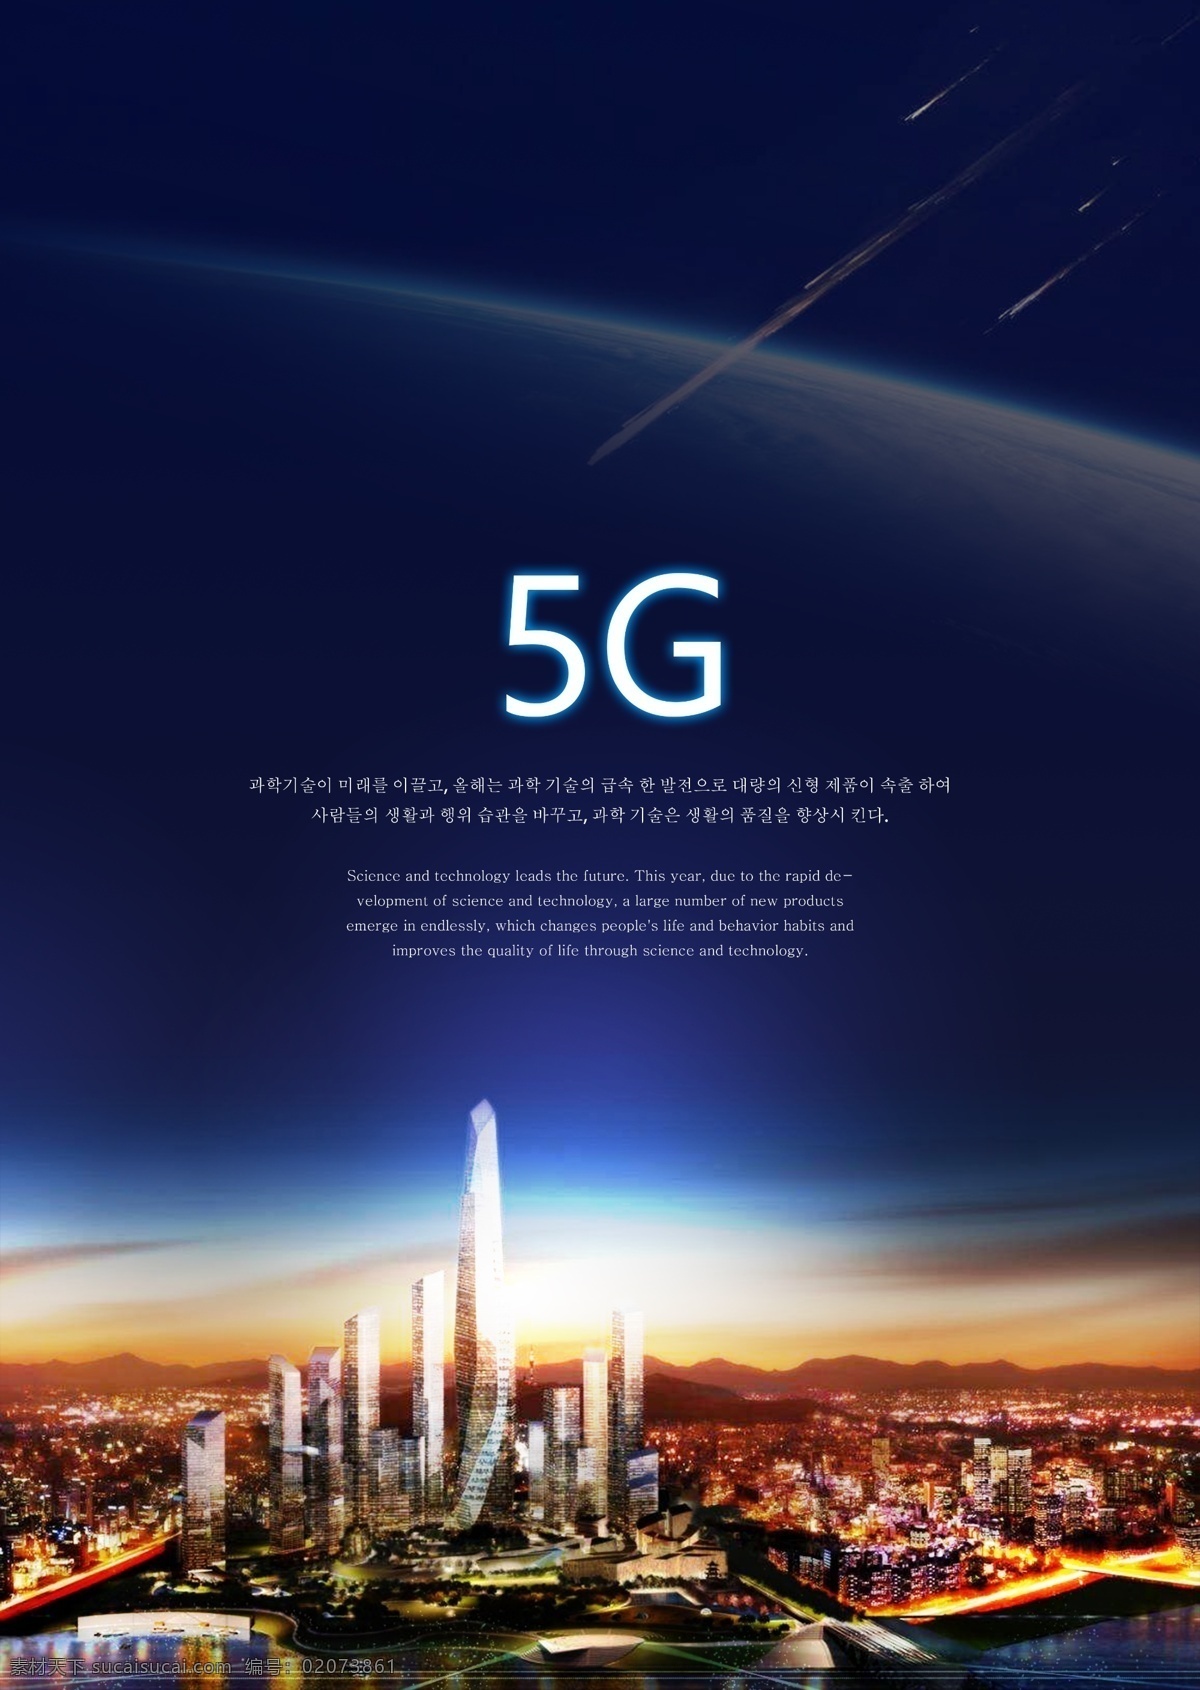 5g 时尚 通讯网络 天空 海报 通讯 网络 蓝色 建造 光 幽远 技术 美丽